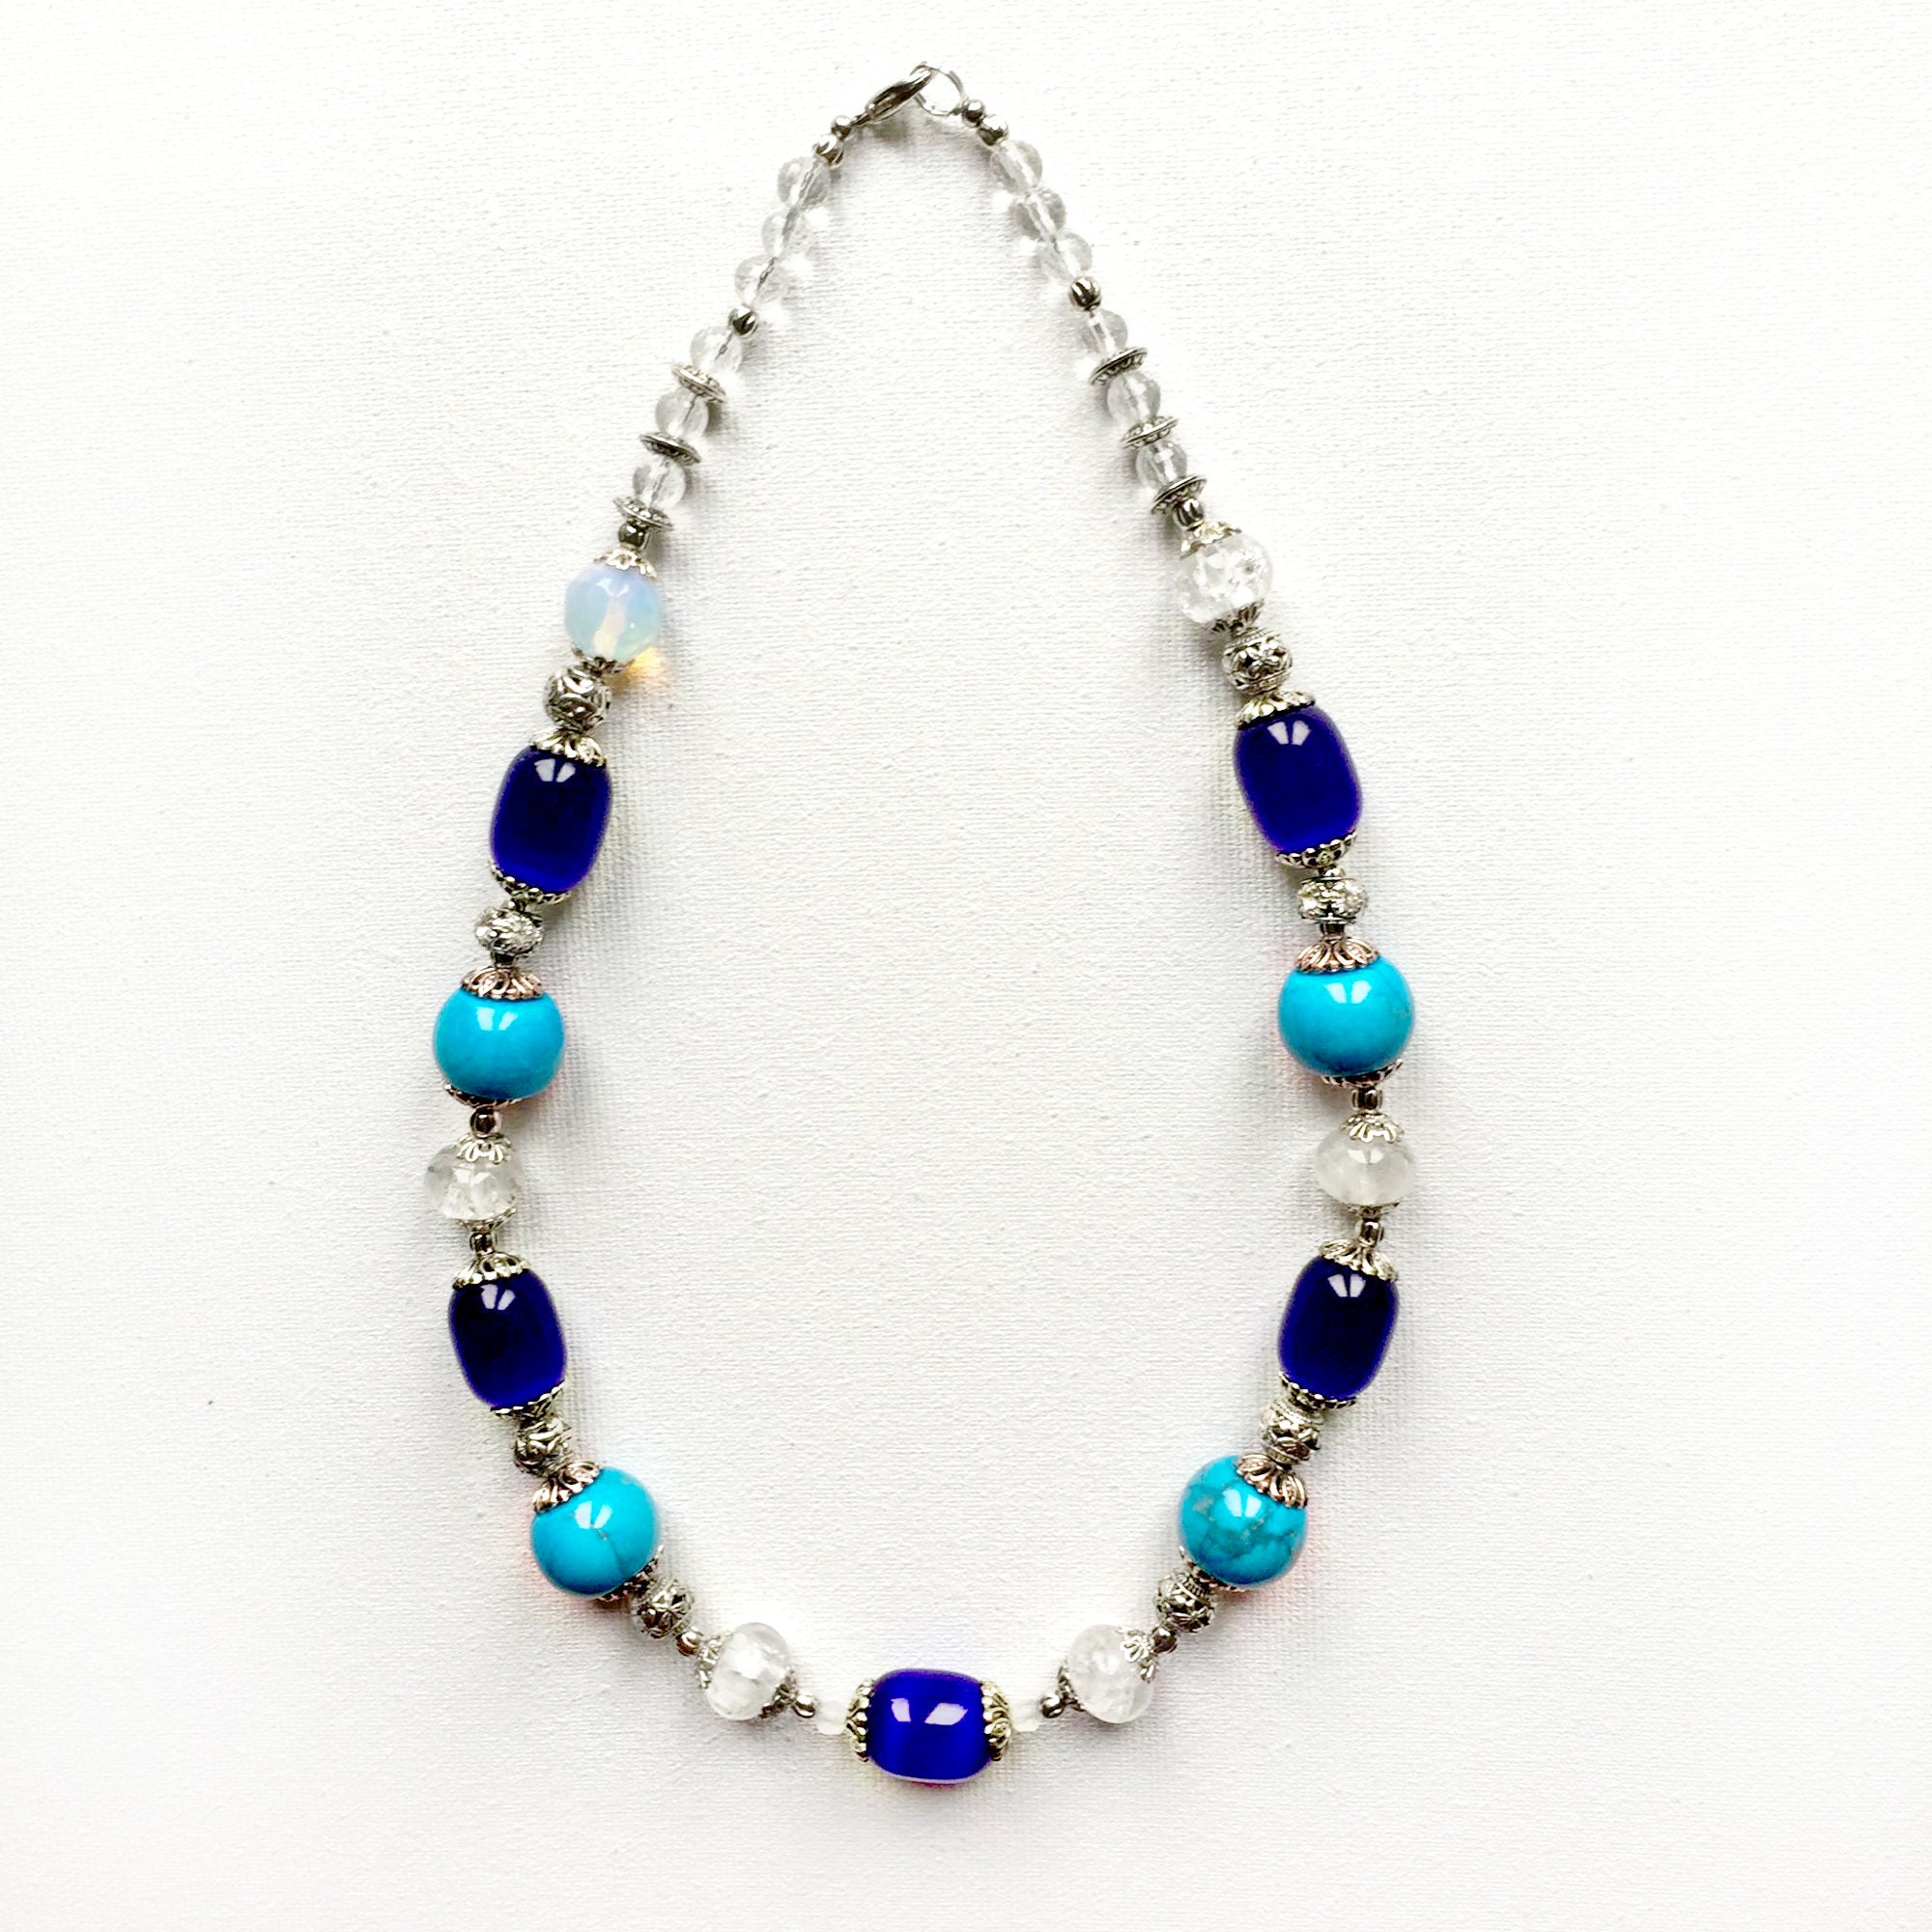 Blue gemstones necklace Rhinestone Ulexite Turquoise | Etsy